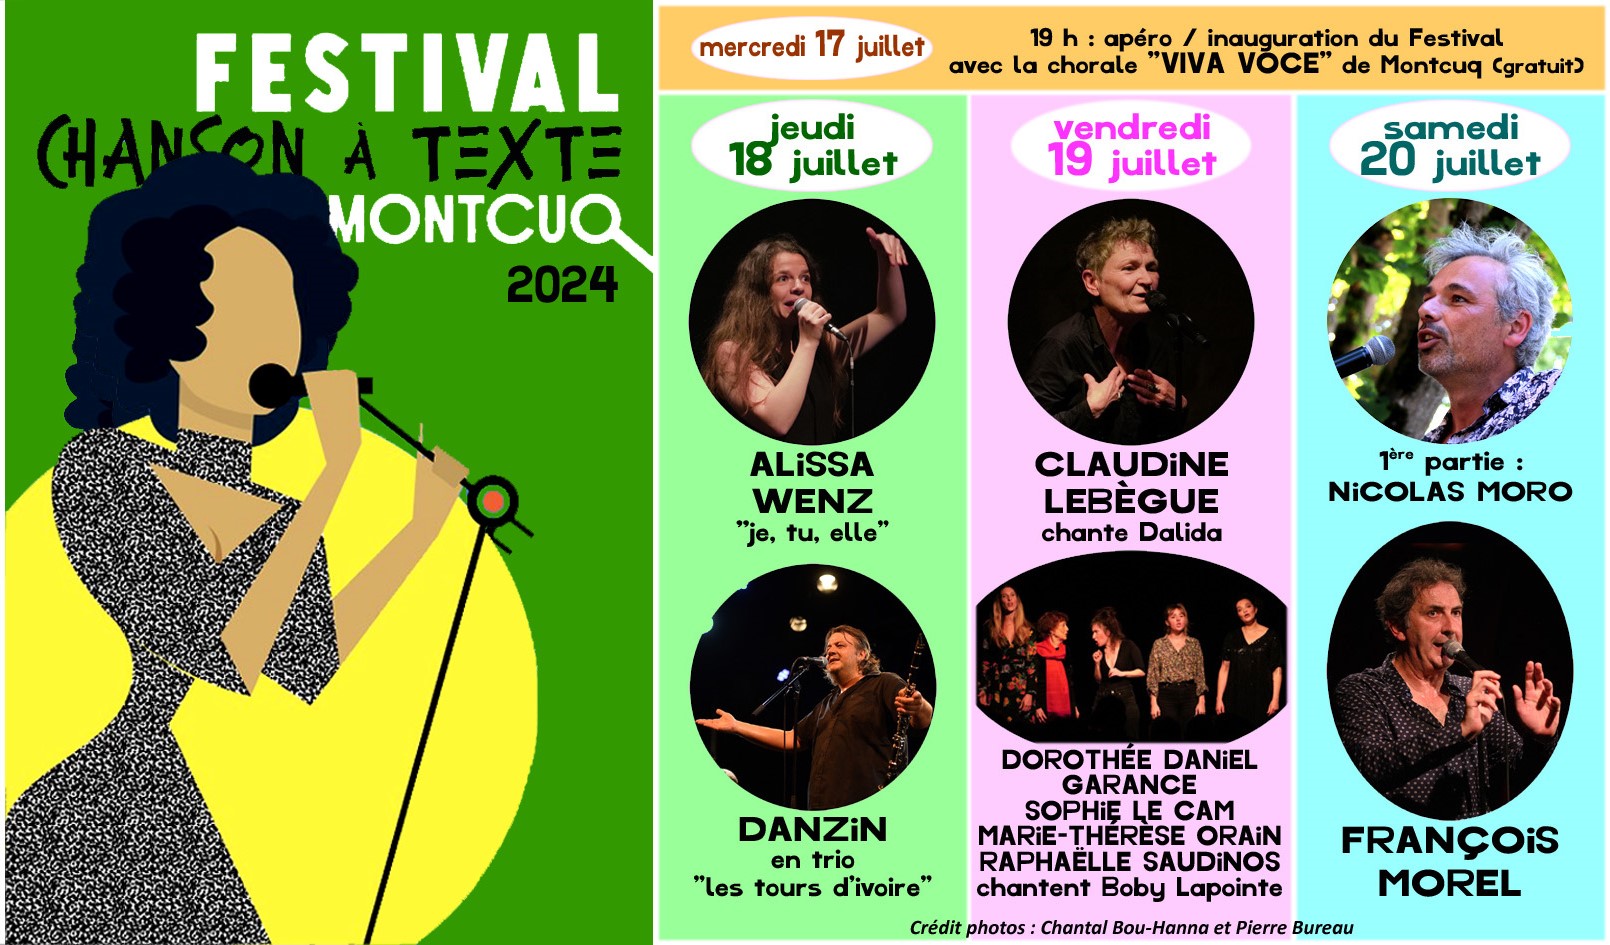 Figeac : Festival de la Chanson à Texte de Montcuq : Soirée d'ouverture